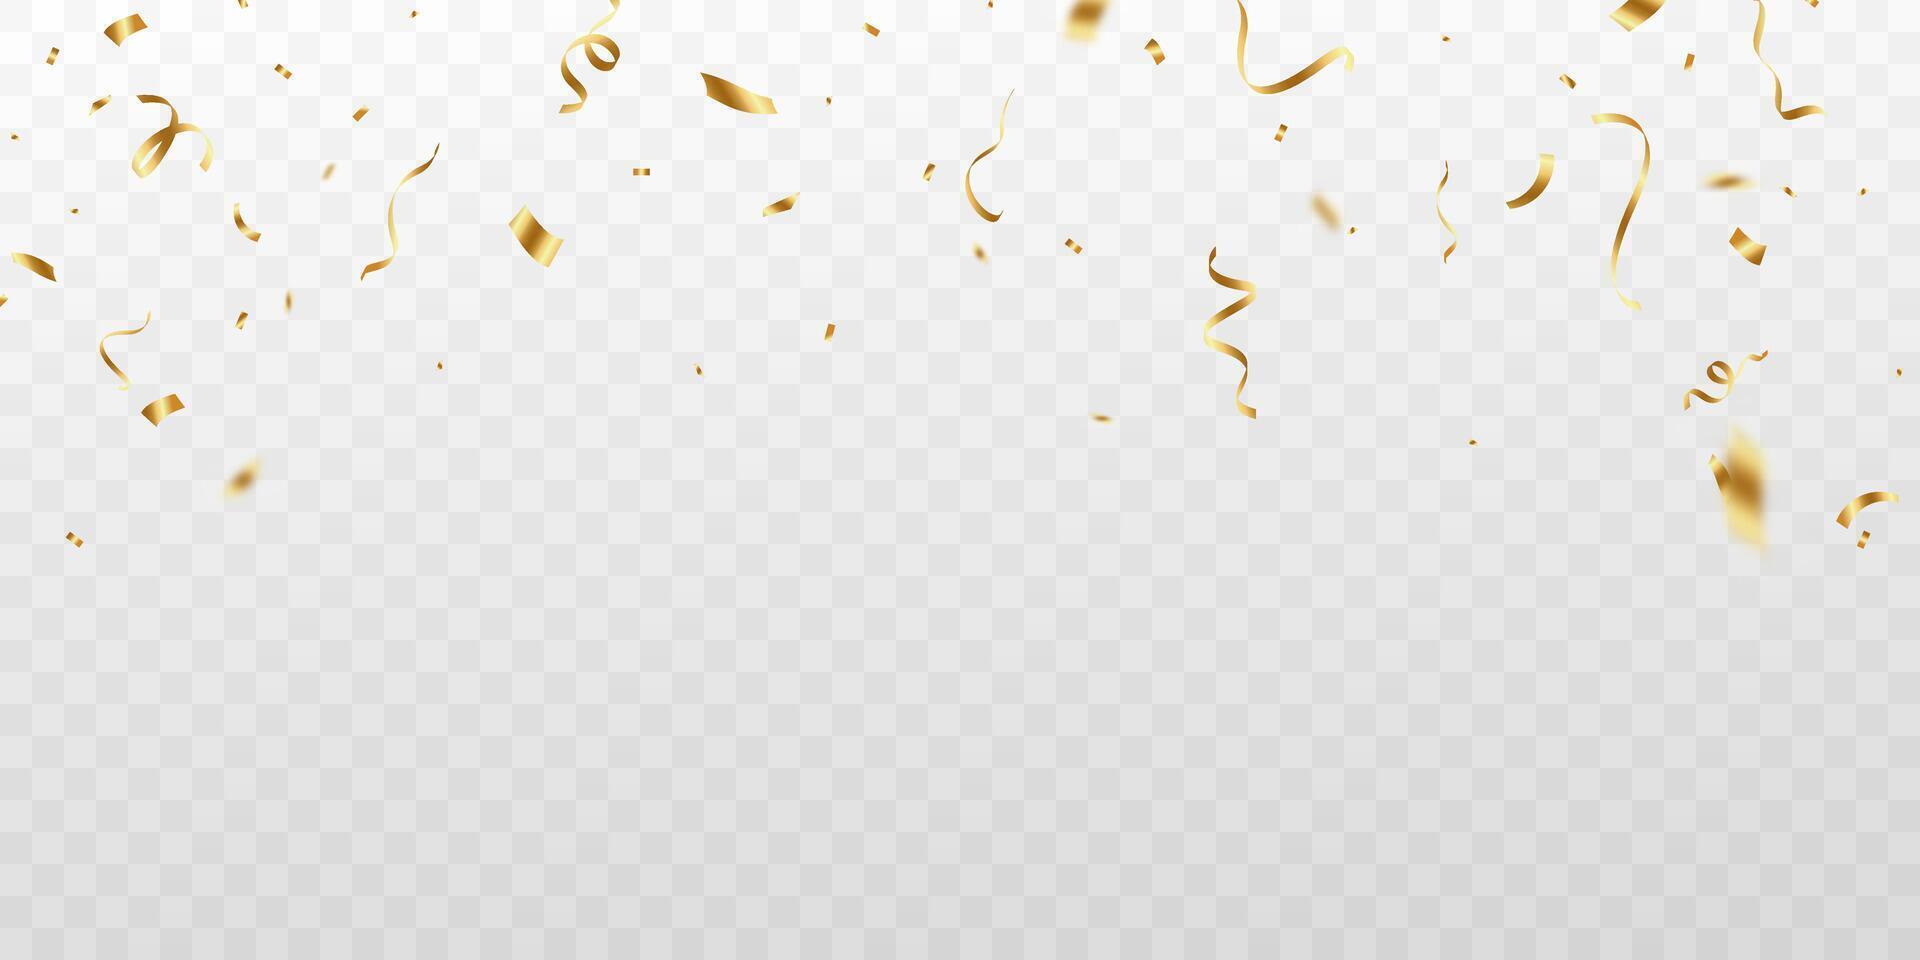 gyllene konfetti och sicksack- band faller från ovan banderoll, glitter vektor